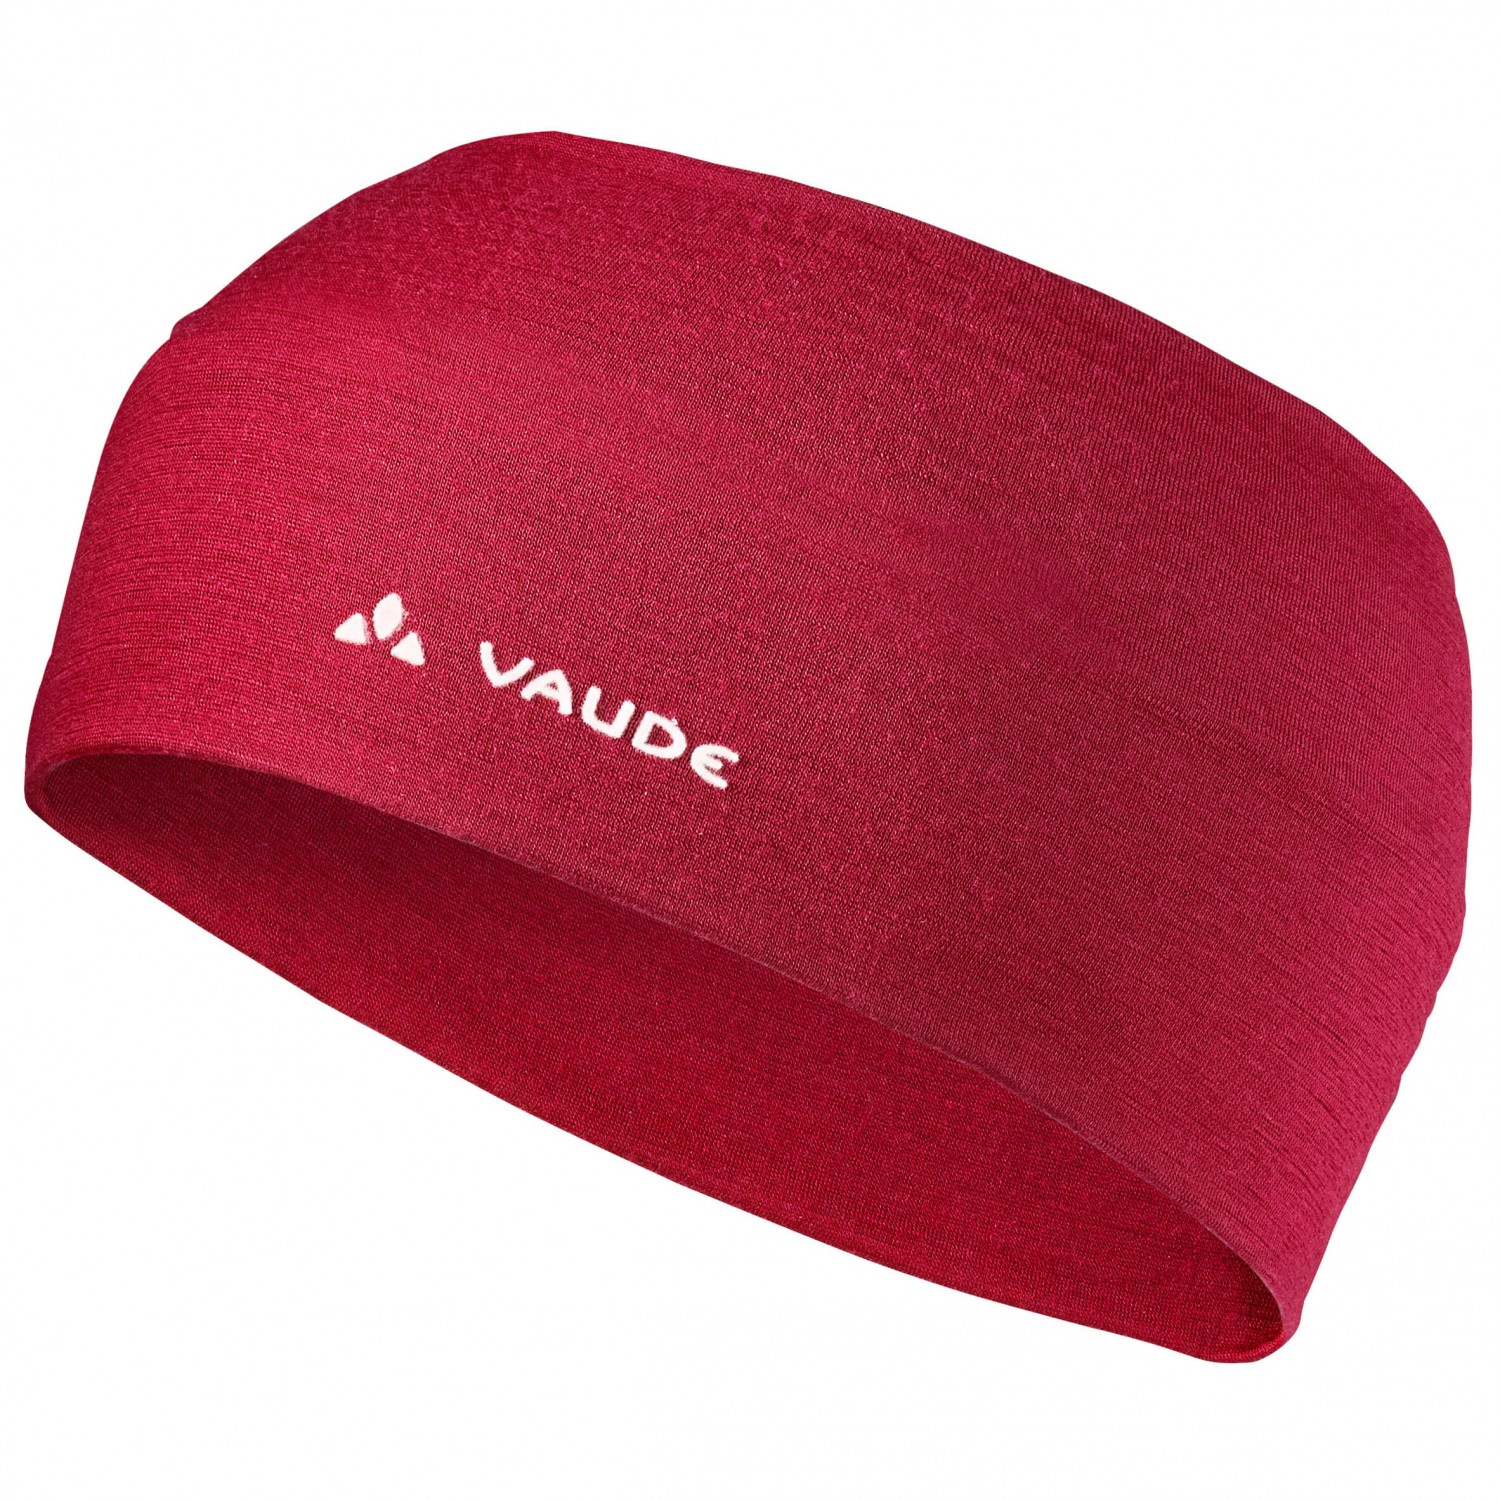 Повязка на голову Vaude Cassons Merino Headband, цвет Dark Indian Red повязка buff fastwick headband barriers graphite